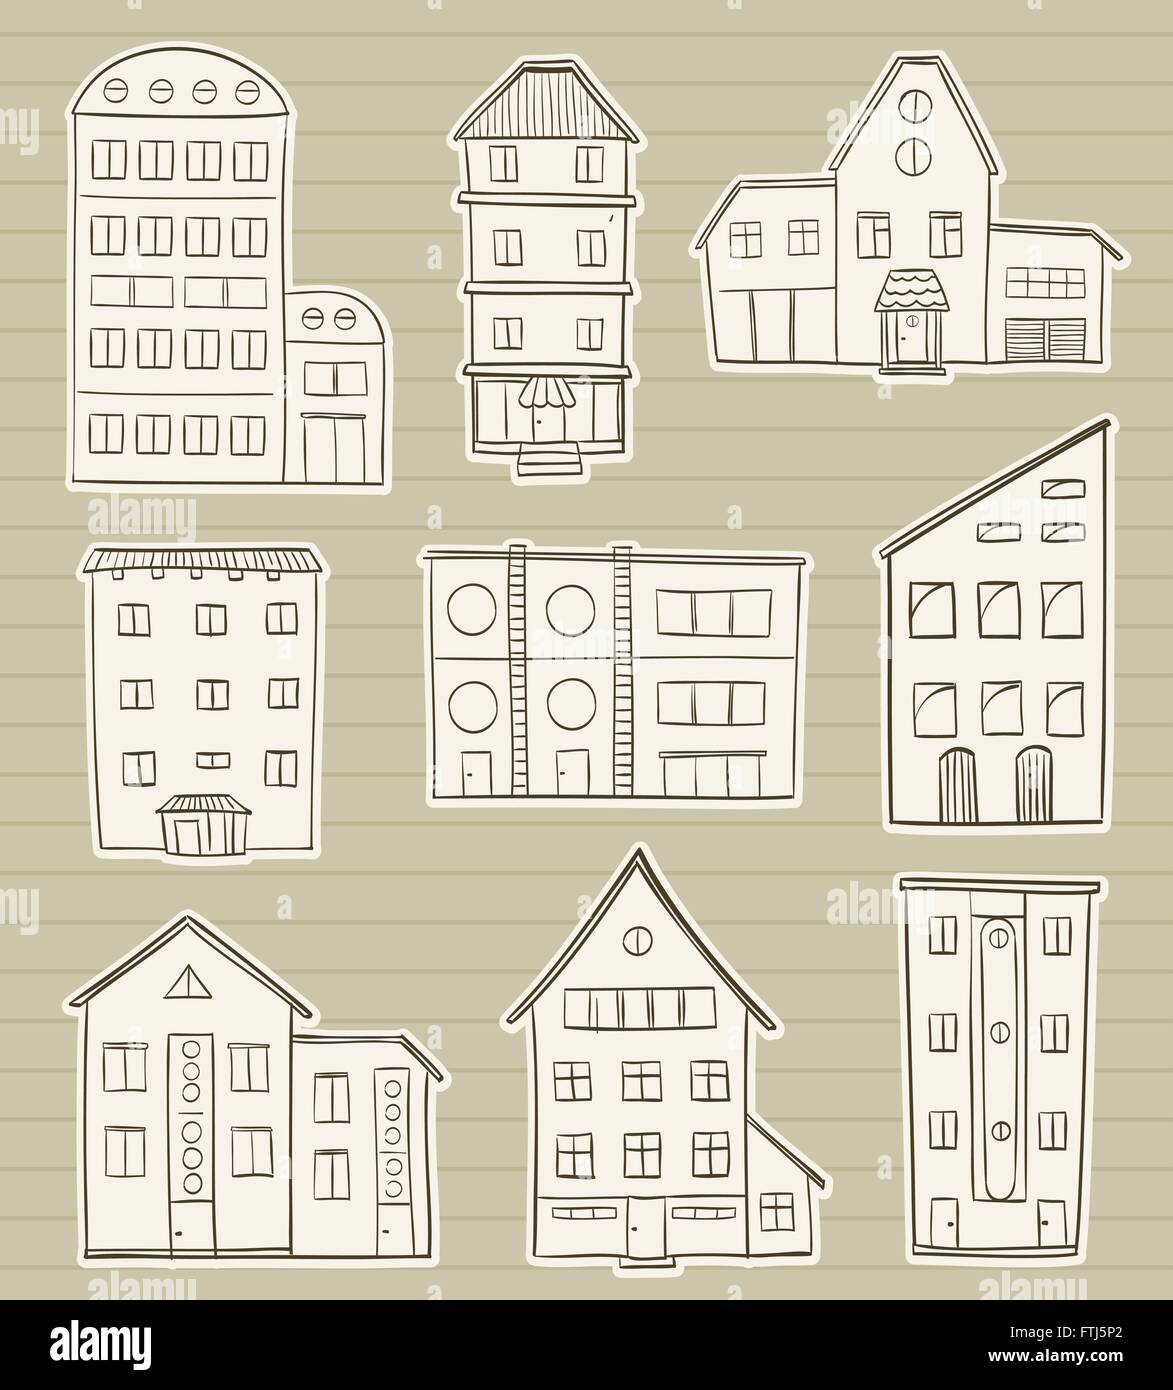 Ensemble de maisons doodle croquis sur papier fond. accueil dessin à la main. vecteur de symboles de la vieille ville Illustration de Vecteur